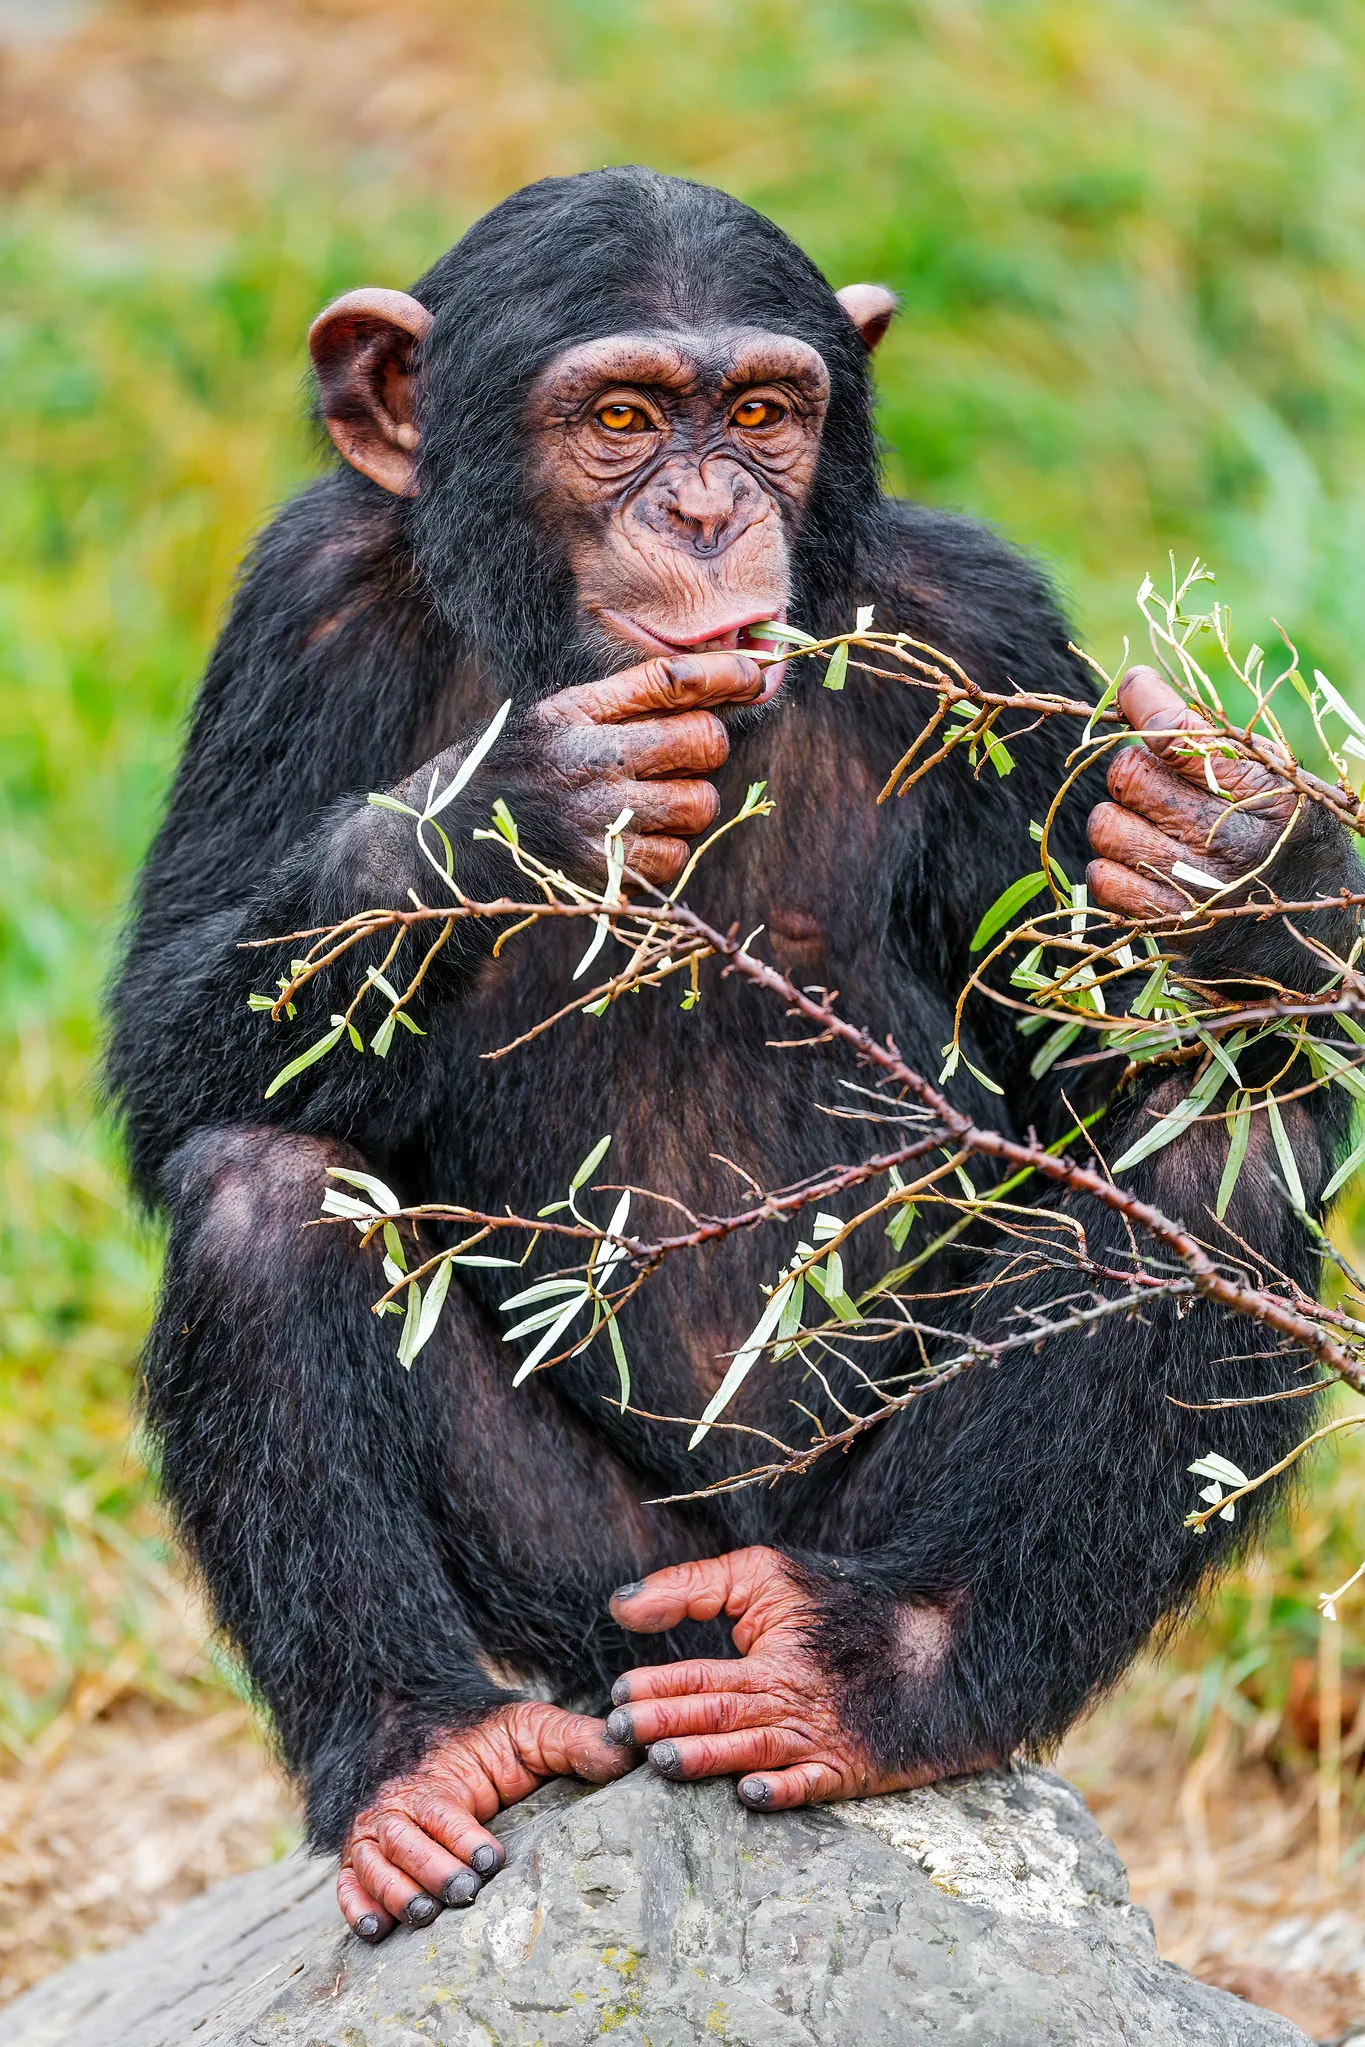 Chimpanzee Vs Human